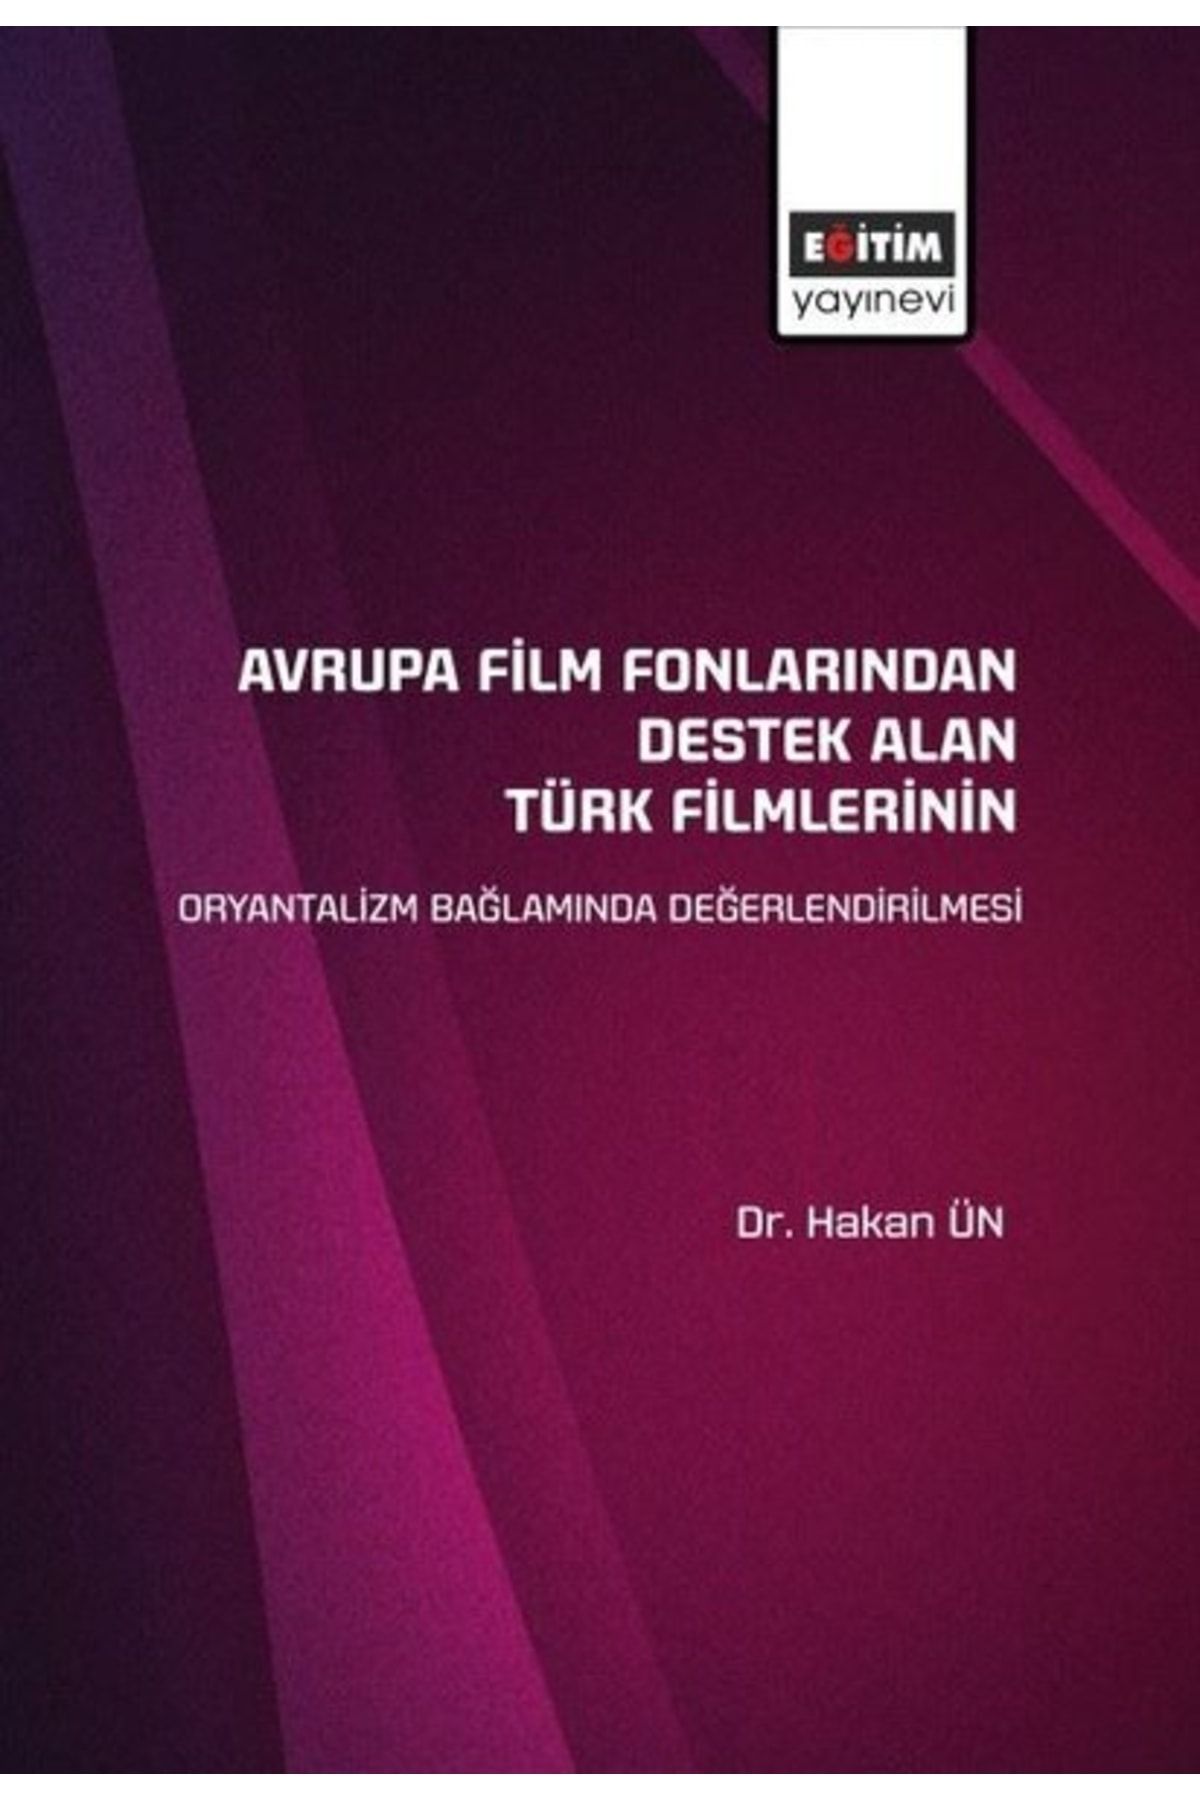 Eğitim Yayınevi Avrupa Film Fonlarından Destek Alan Türk Filmlerinin Oryantalizm Bağlamında Değerlendirilmesi